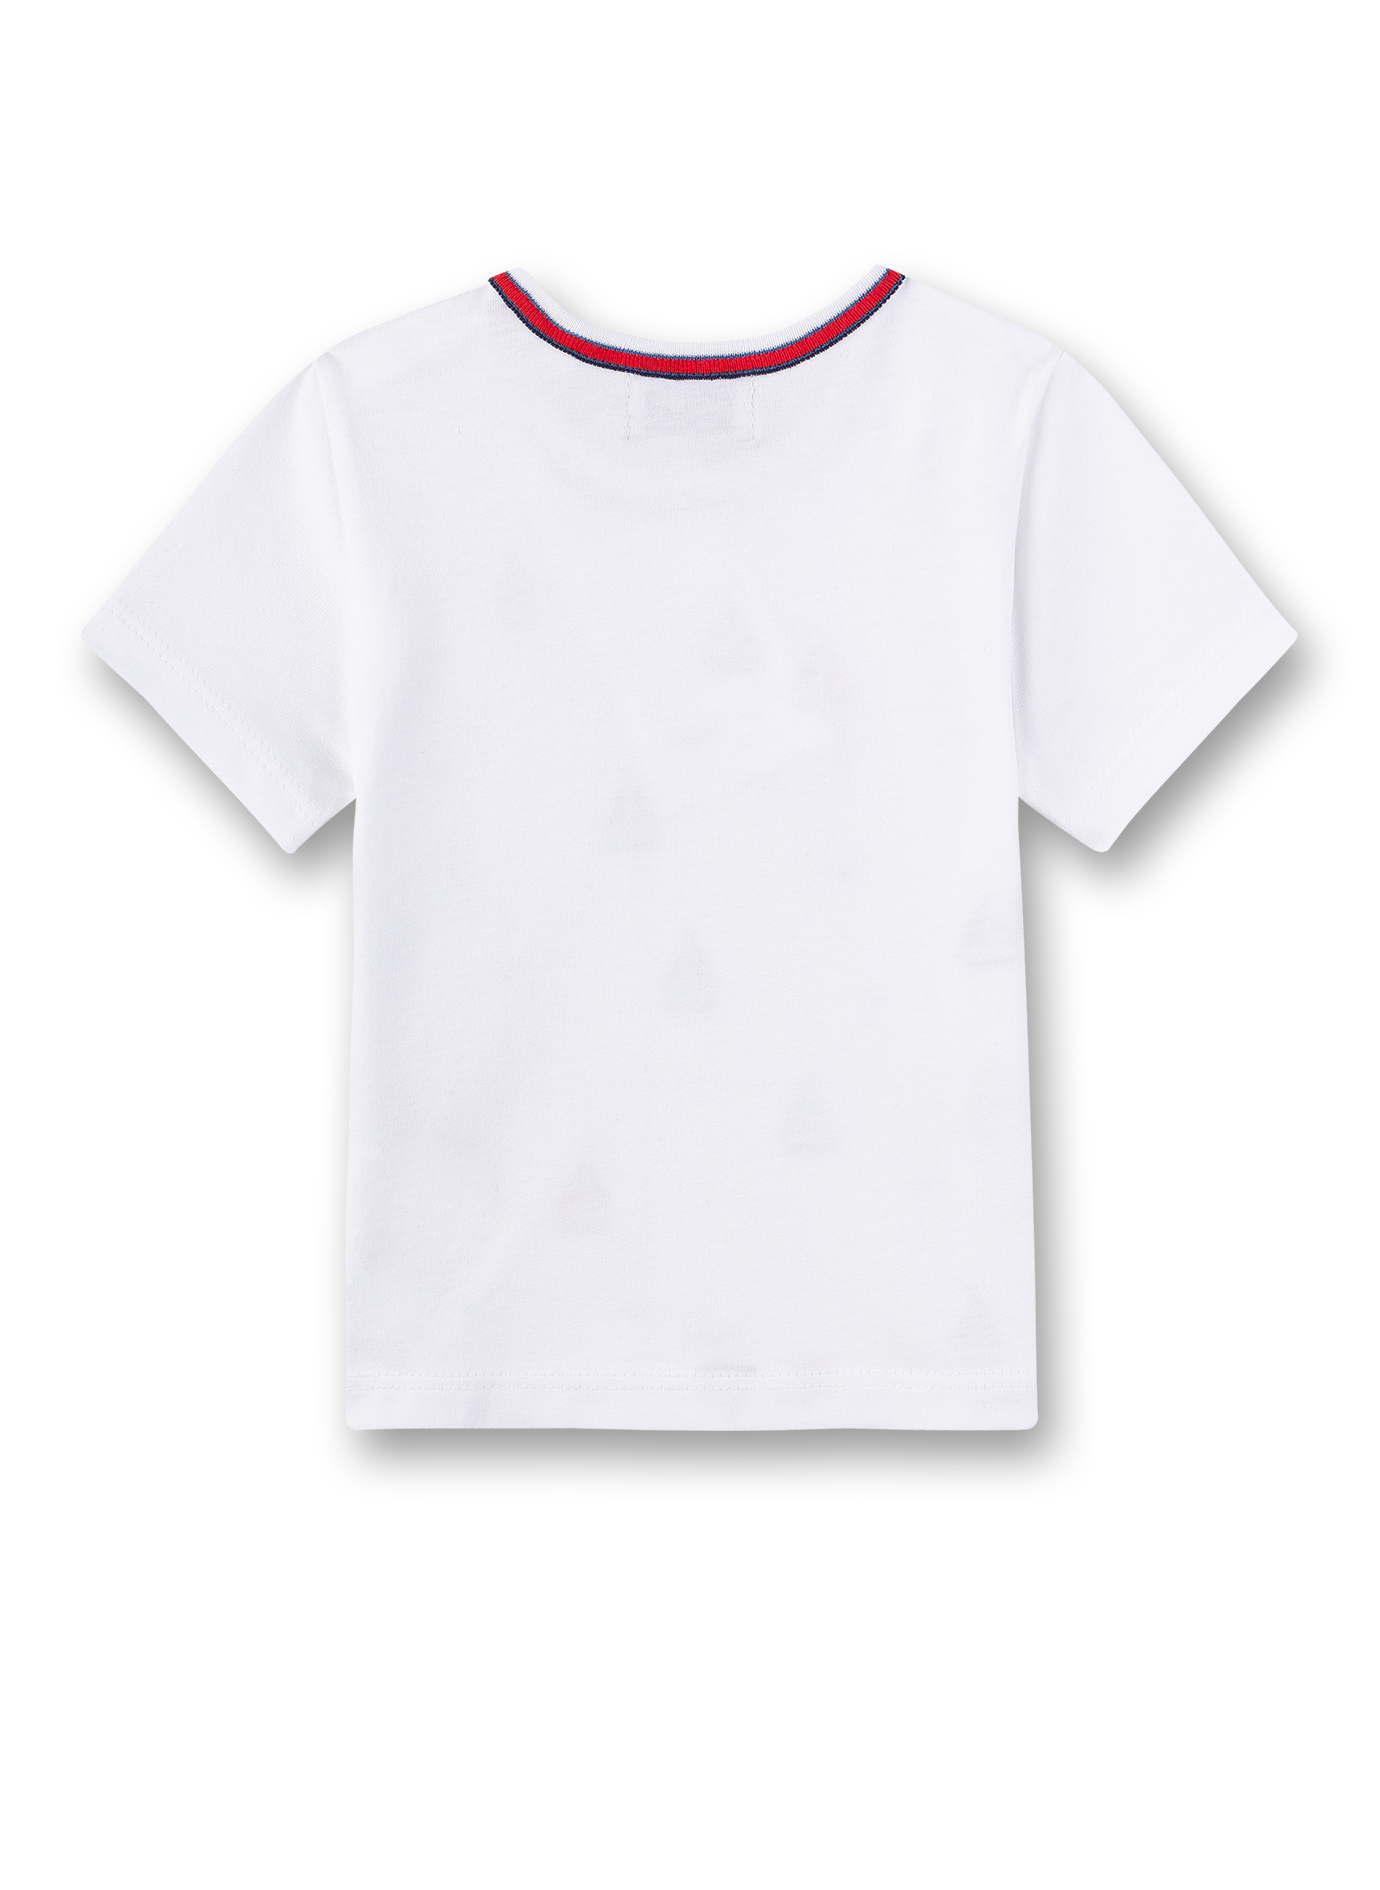 Jungen T-Shirt Weiß Small Sailor